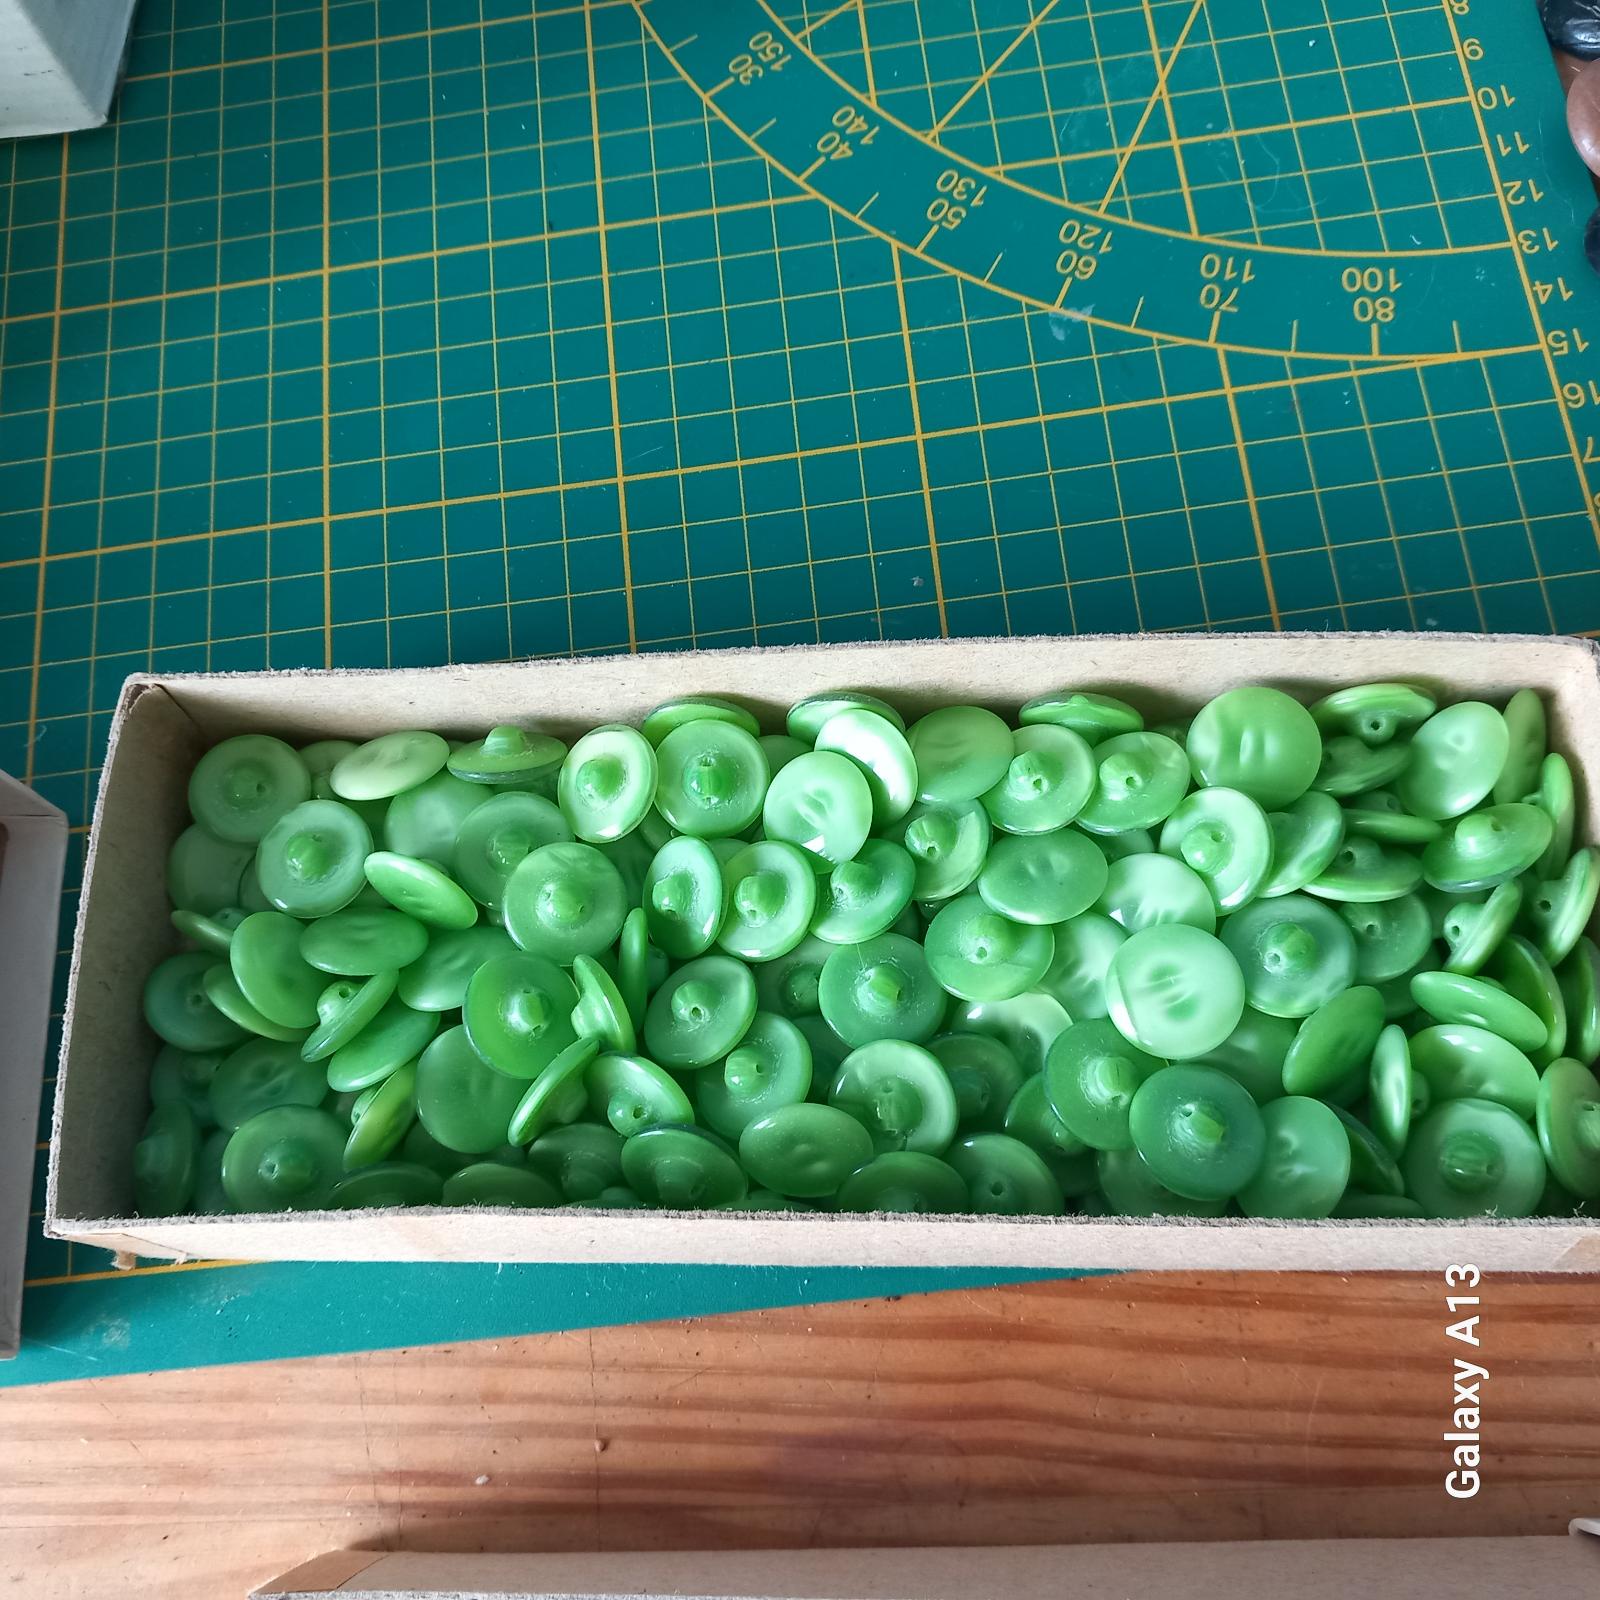 Veľké množstvo starých retro gombíkov perleť - zelené - Ručné práce